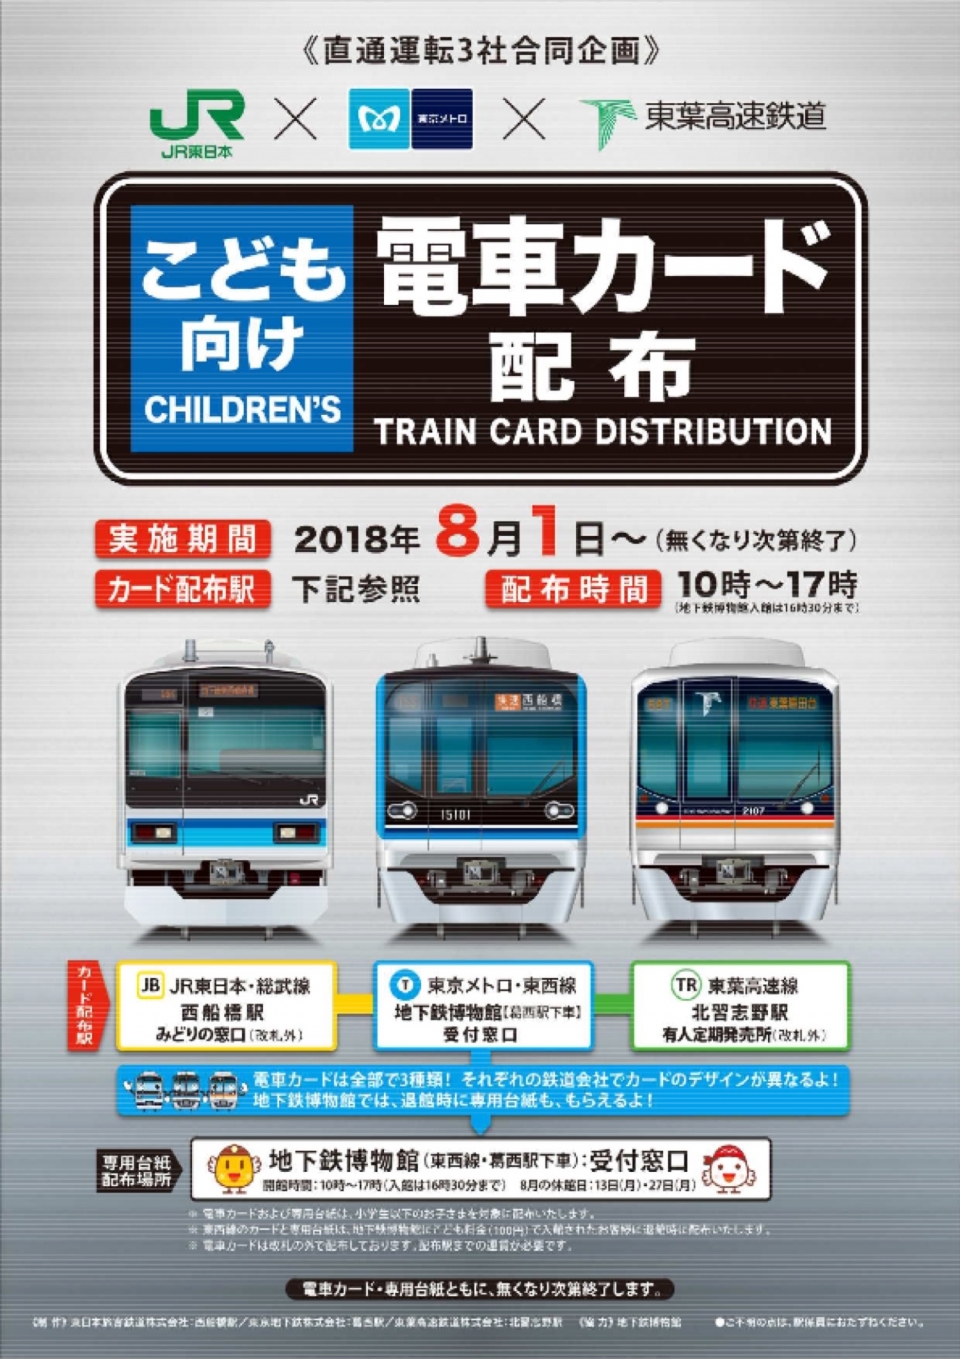 Jr東と東京メトロ 東葉高速 こども向け電車カードを配布 8月から Raillab ニュース レイルラボ